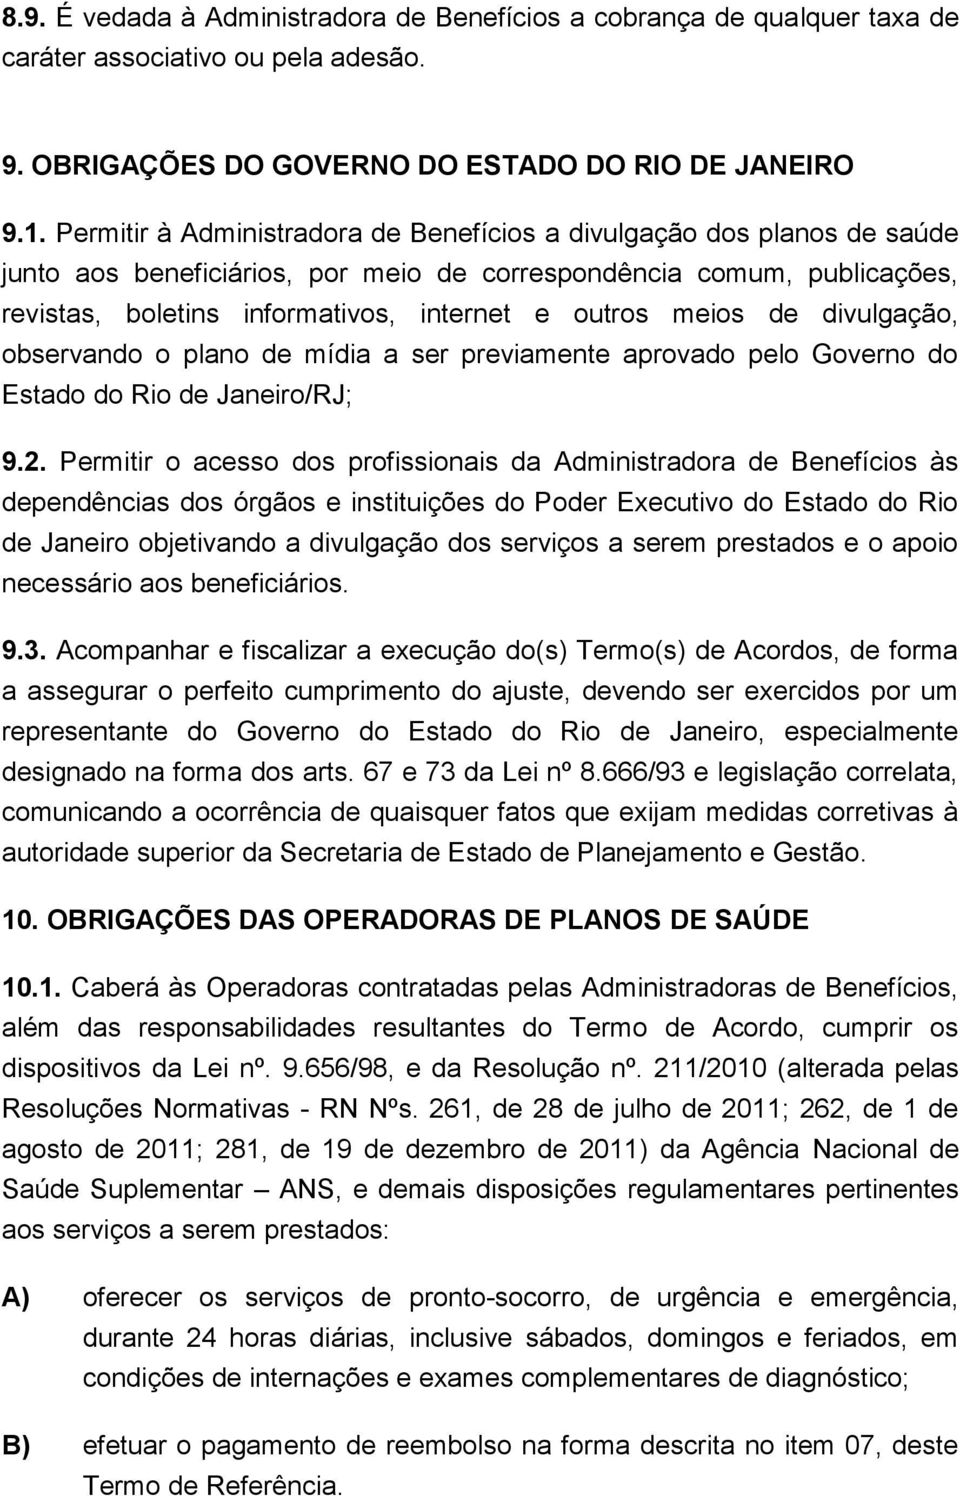 meios de divulgação, observando o plano de mídia a ser previamente aprovado pelo Governo do Estado do Rio de Janeiro/RJ; 9.2.